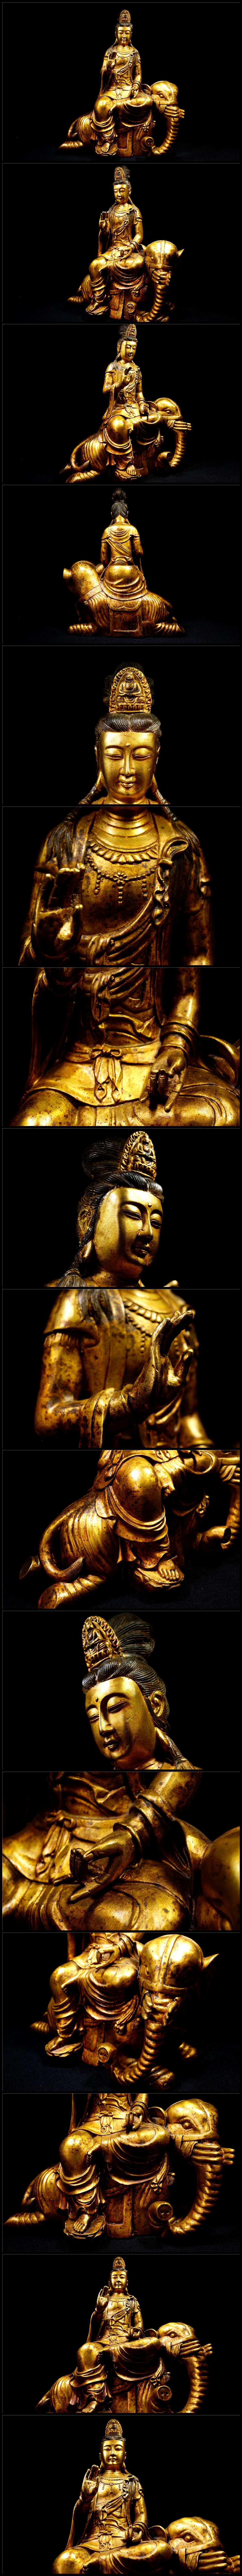 安心直販金銅細工 仏教 大迫力文殊菩造像高彫 鎮宅 開運置物 極上質 高さ約40cm 仏像